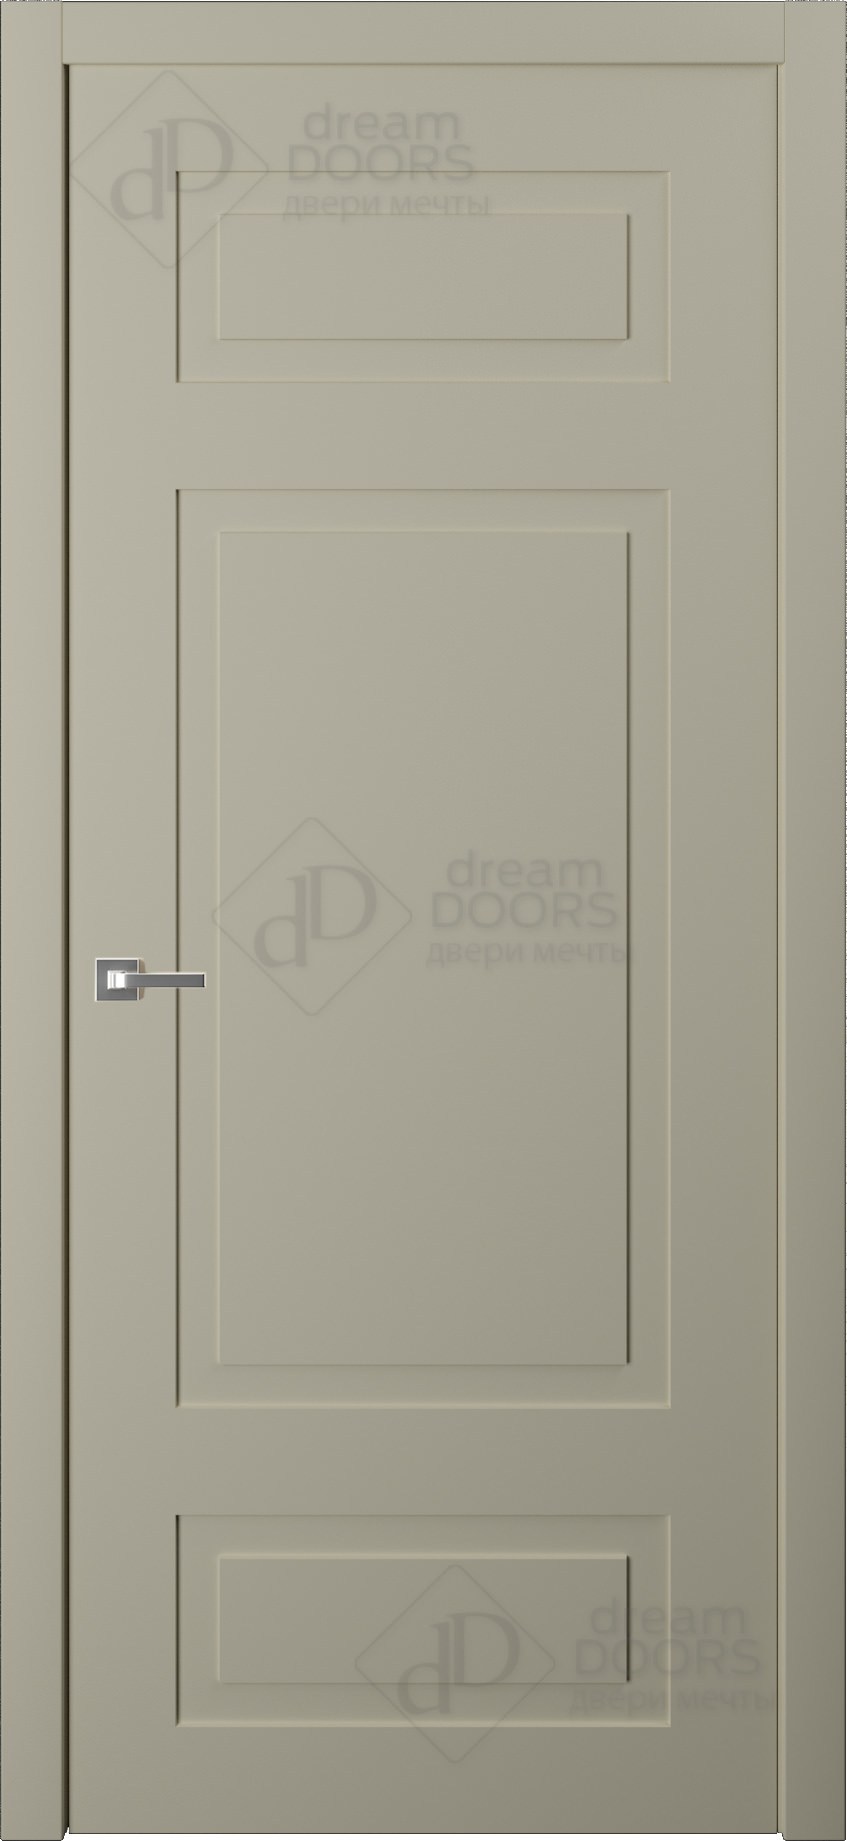 Dream Doors Межкомнатная дверь AN11, арт. 6229 - фото №1